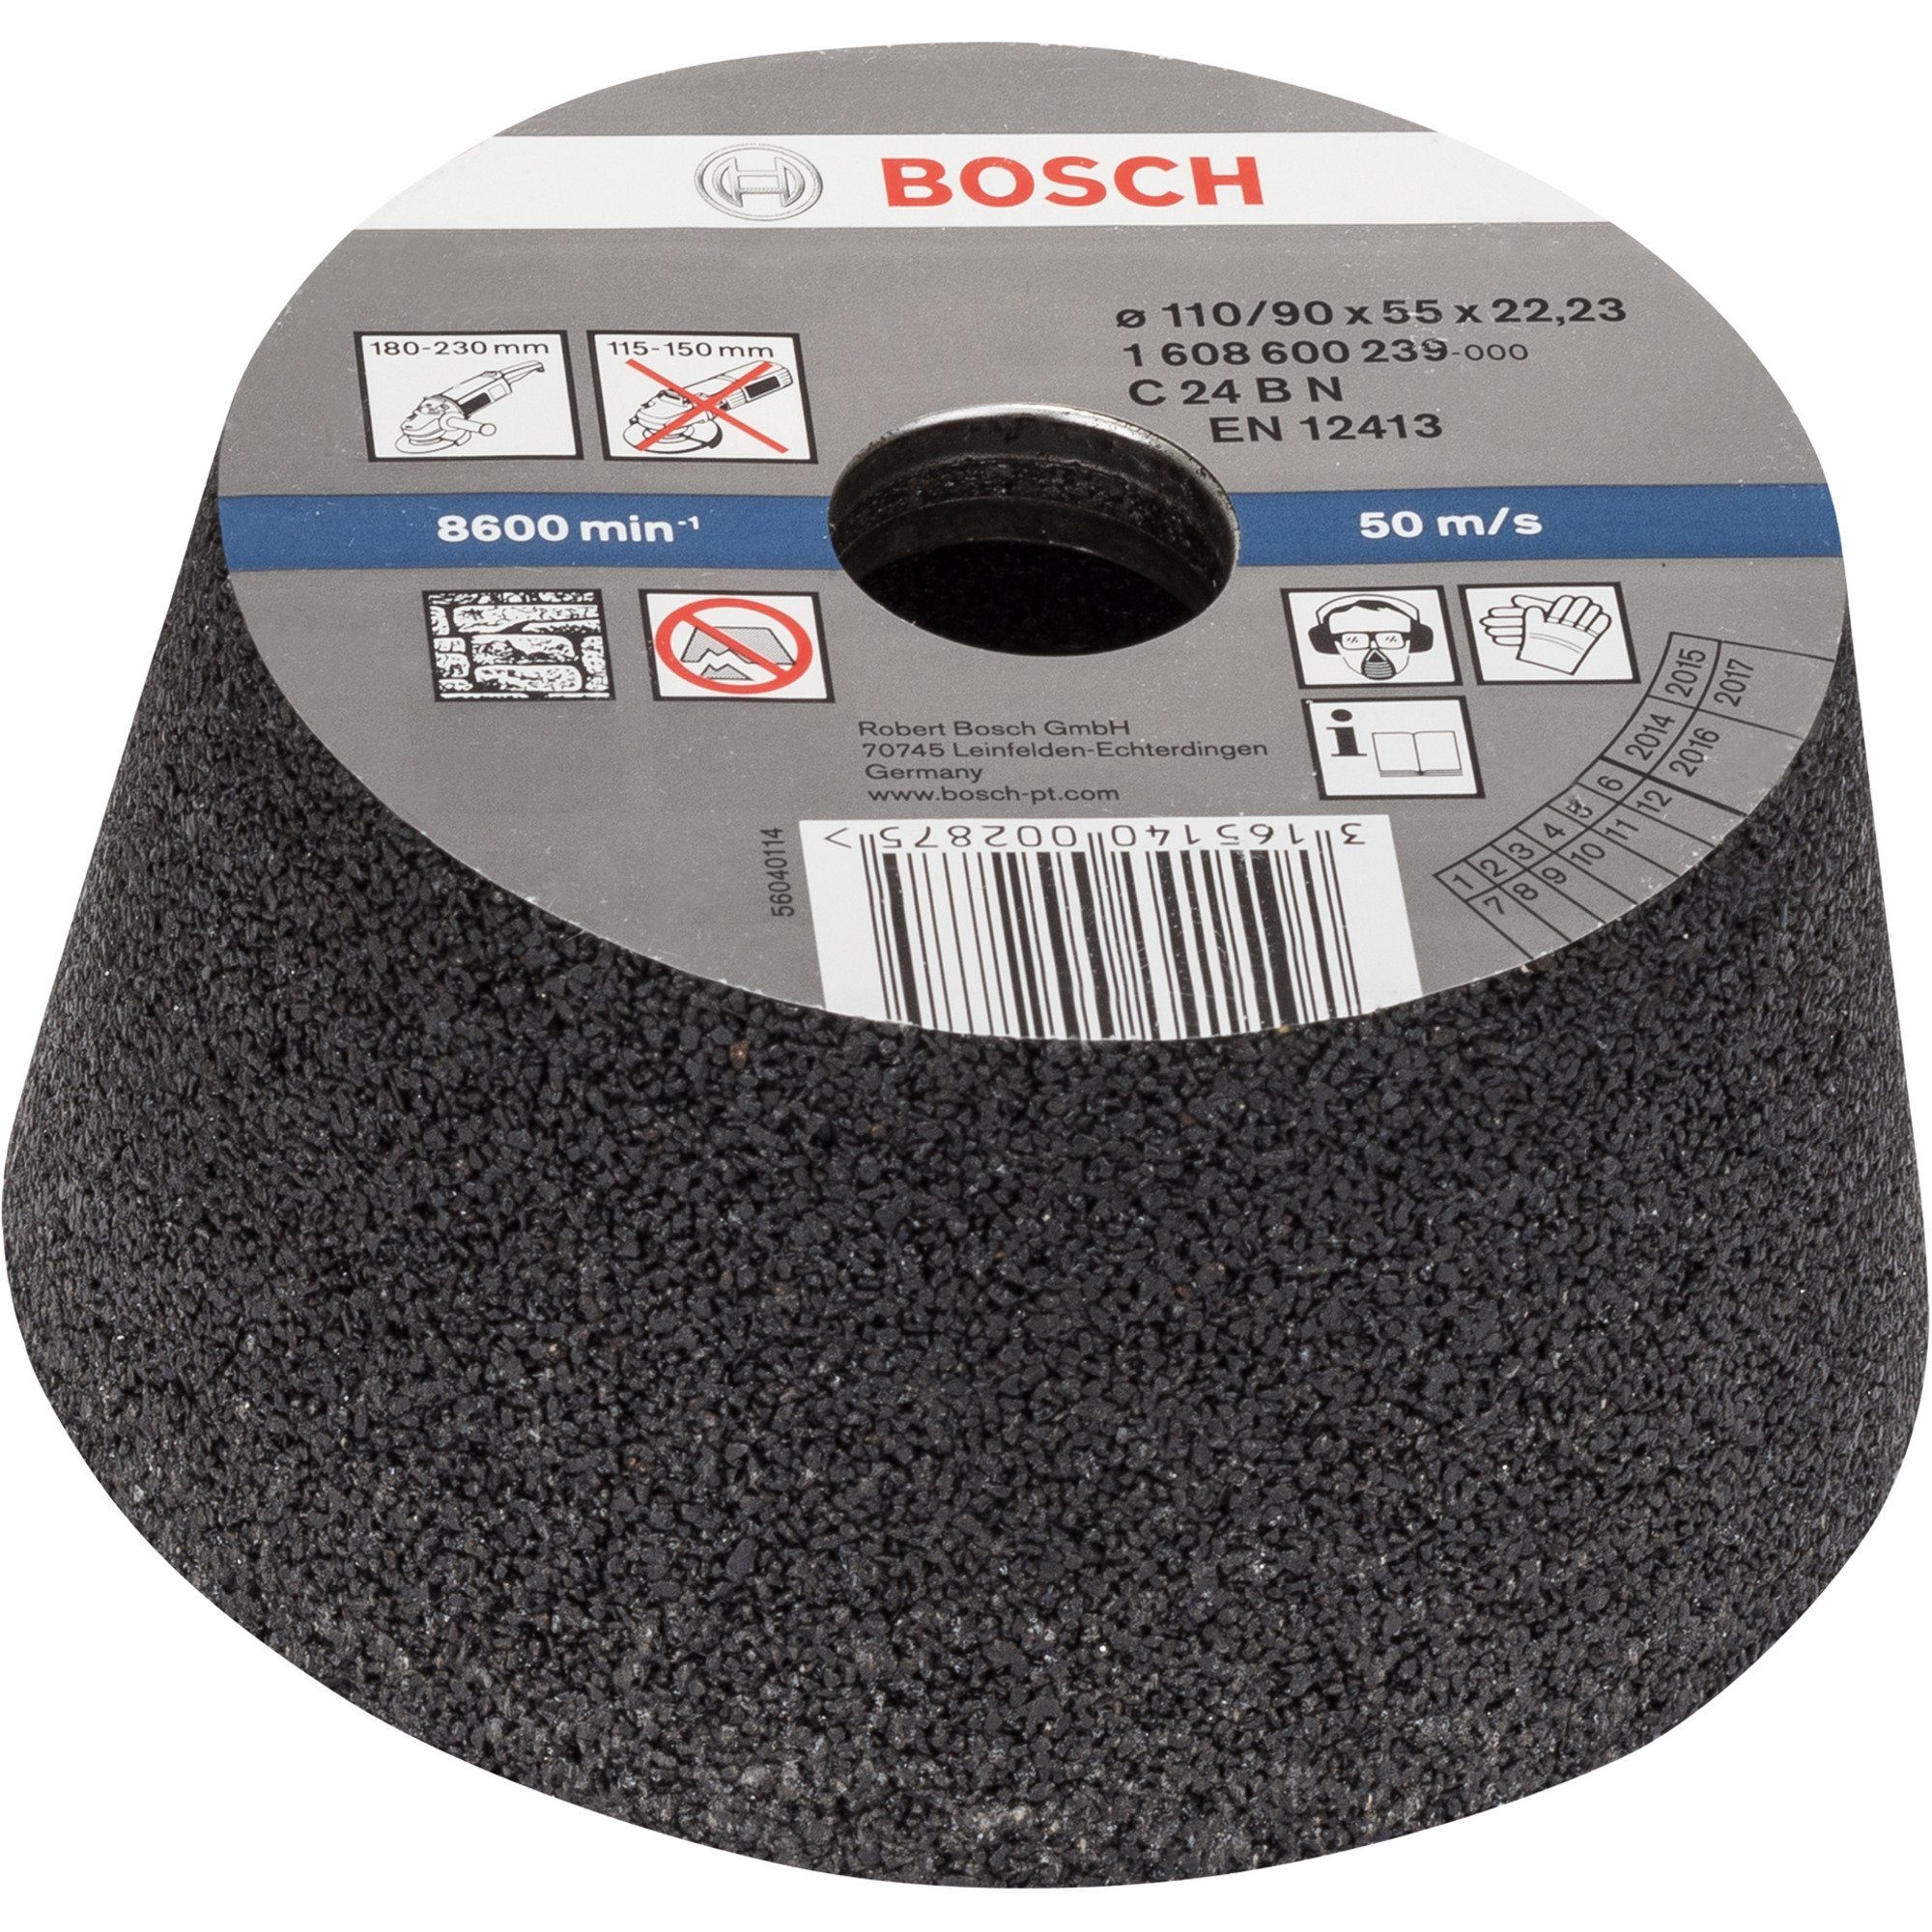 Bosch Accessories BOSCH Schleifscheibe Bosch Professional Schleiftopf konisch, für Stein